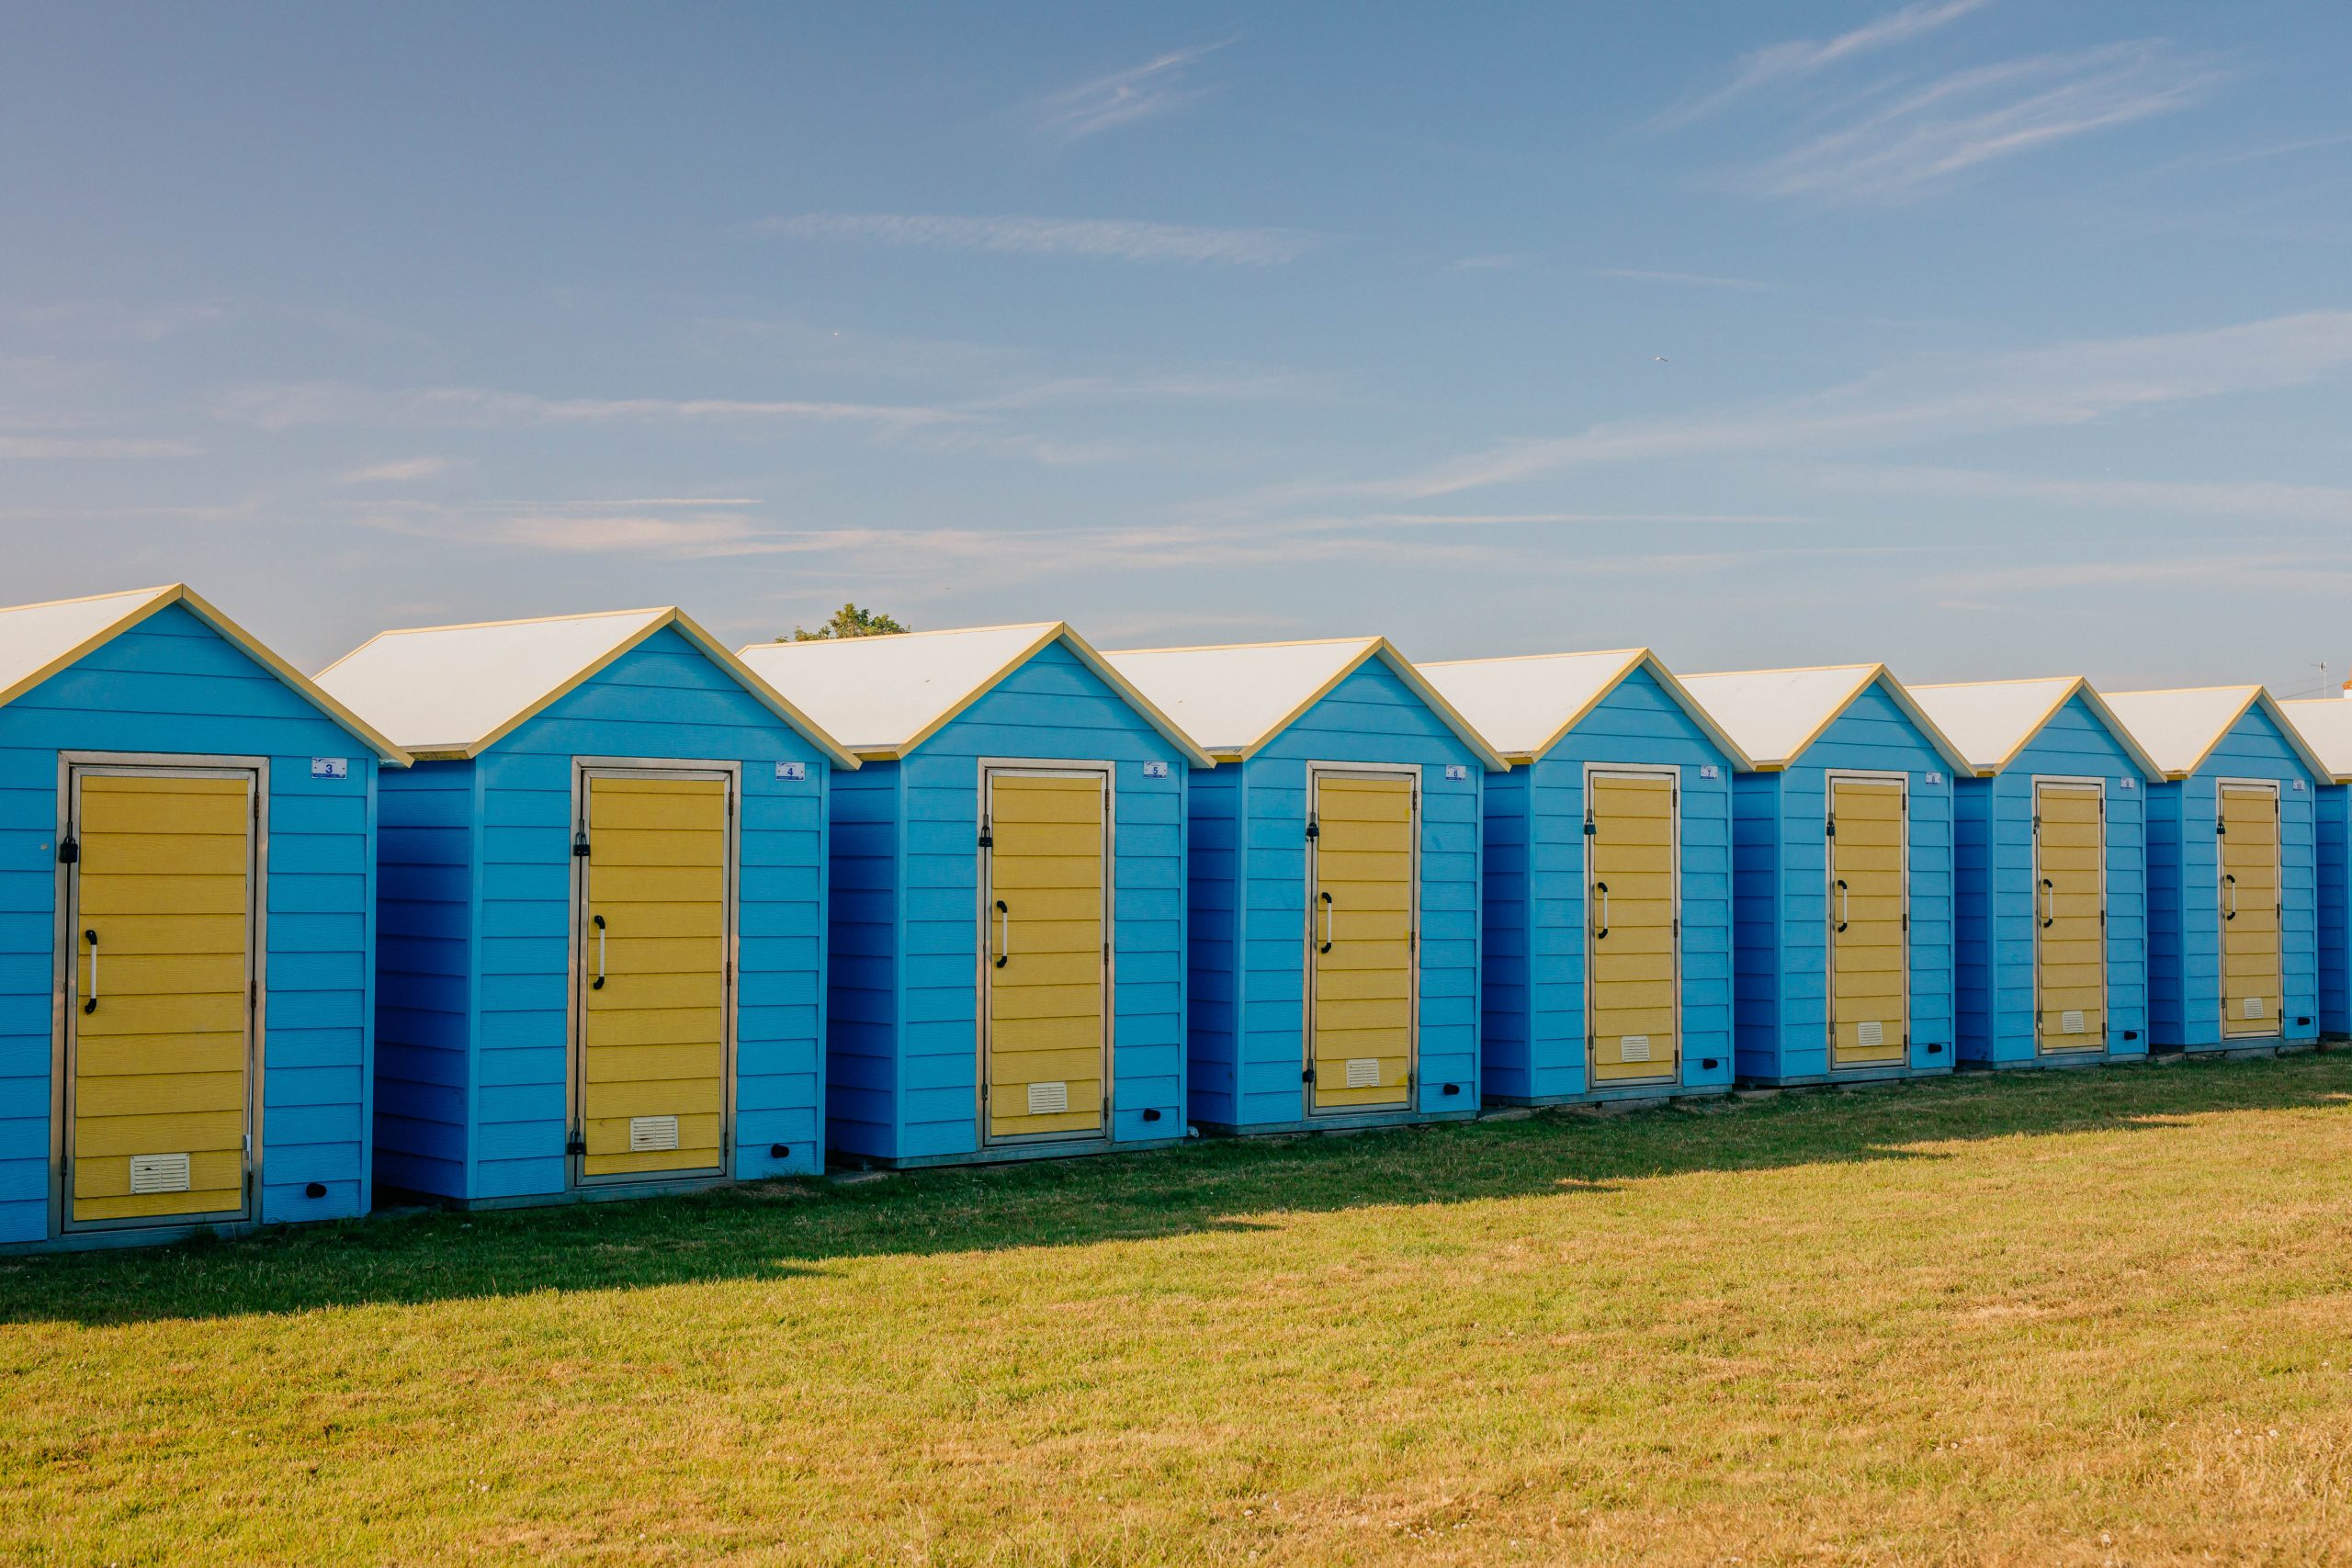 Beach huts at Felpham beach, Bognor Regis. 20th June 2022.